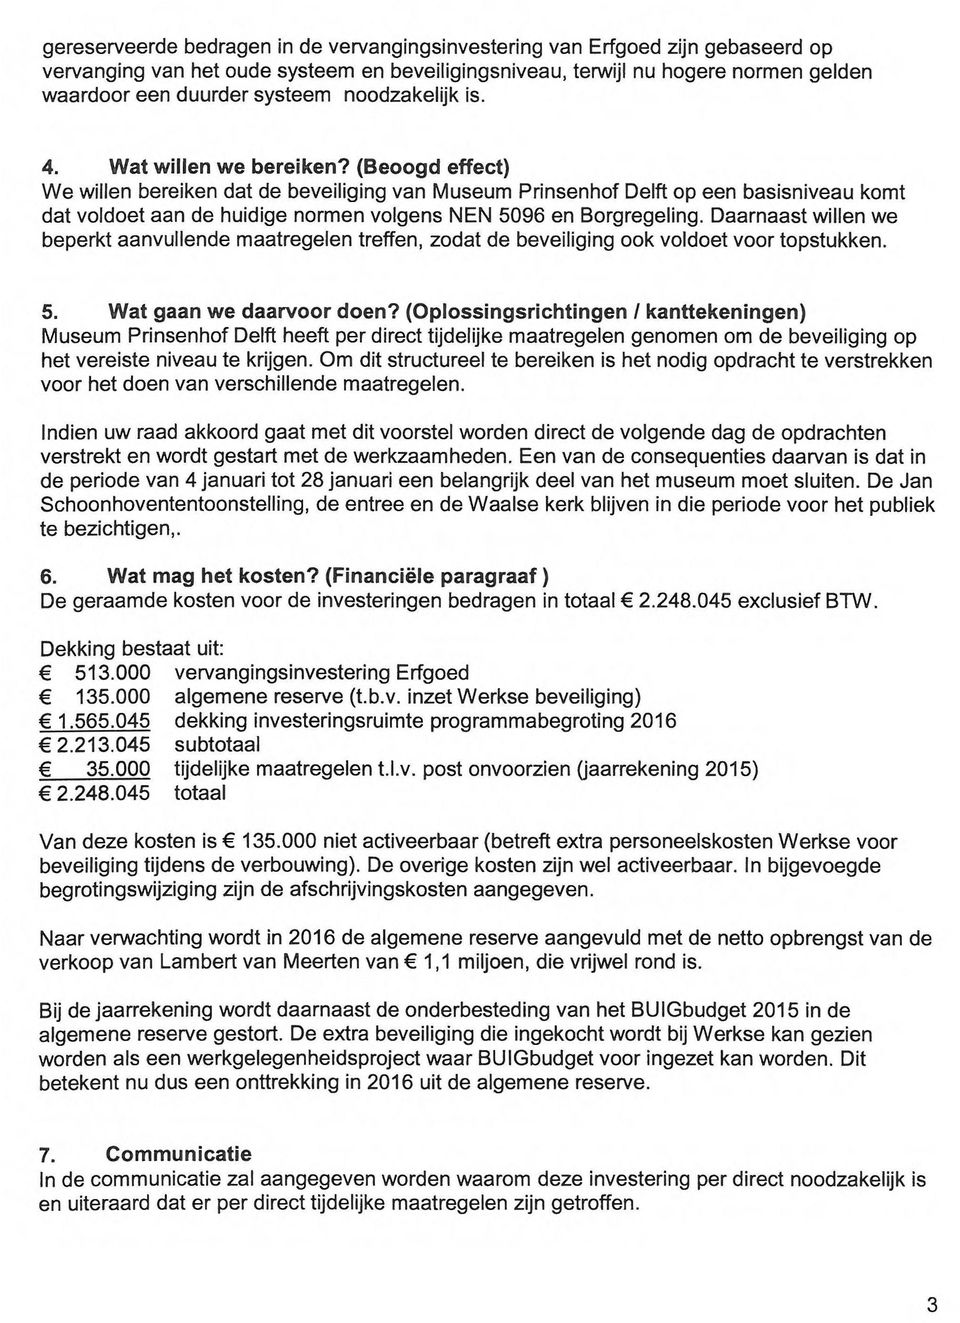 (Beoogd effect) We willen bereiken dat de beveiliging van Museum Prinsenhof Delft op een basisniveau komt dat voldoet aan de huidige normen volgens NEN 5096 en Borgregeling.